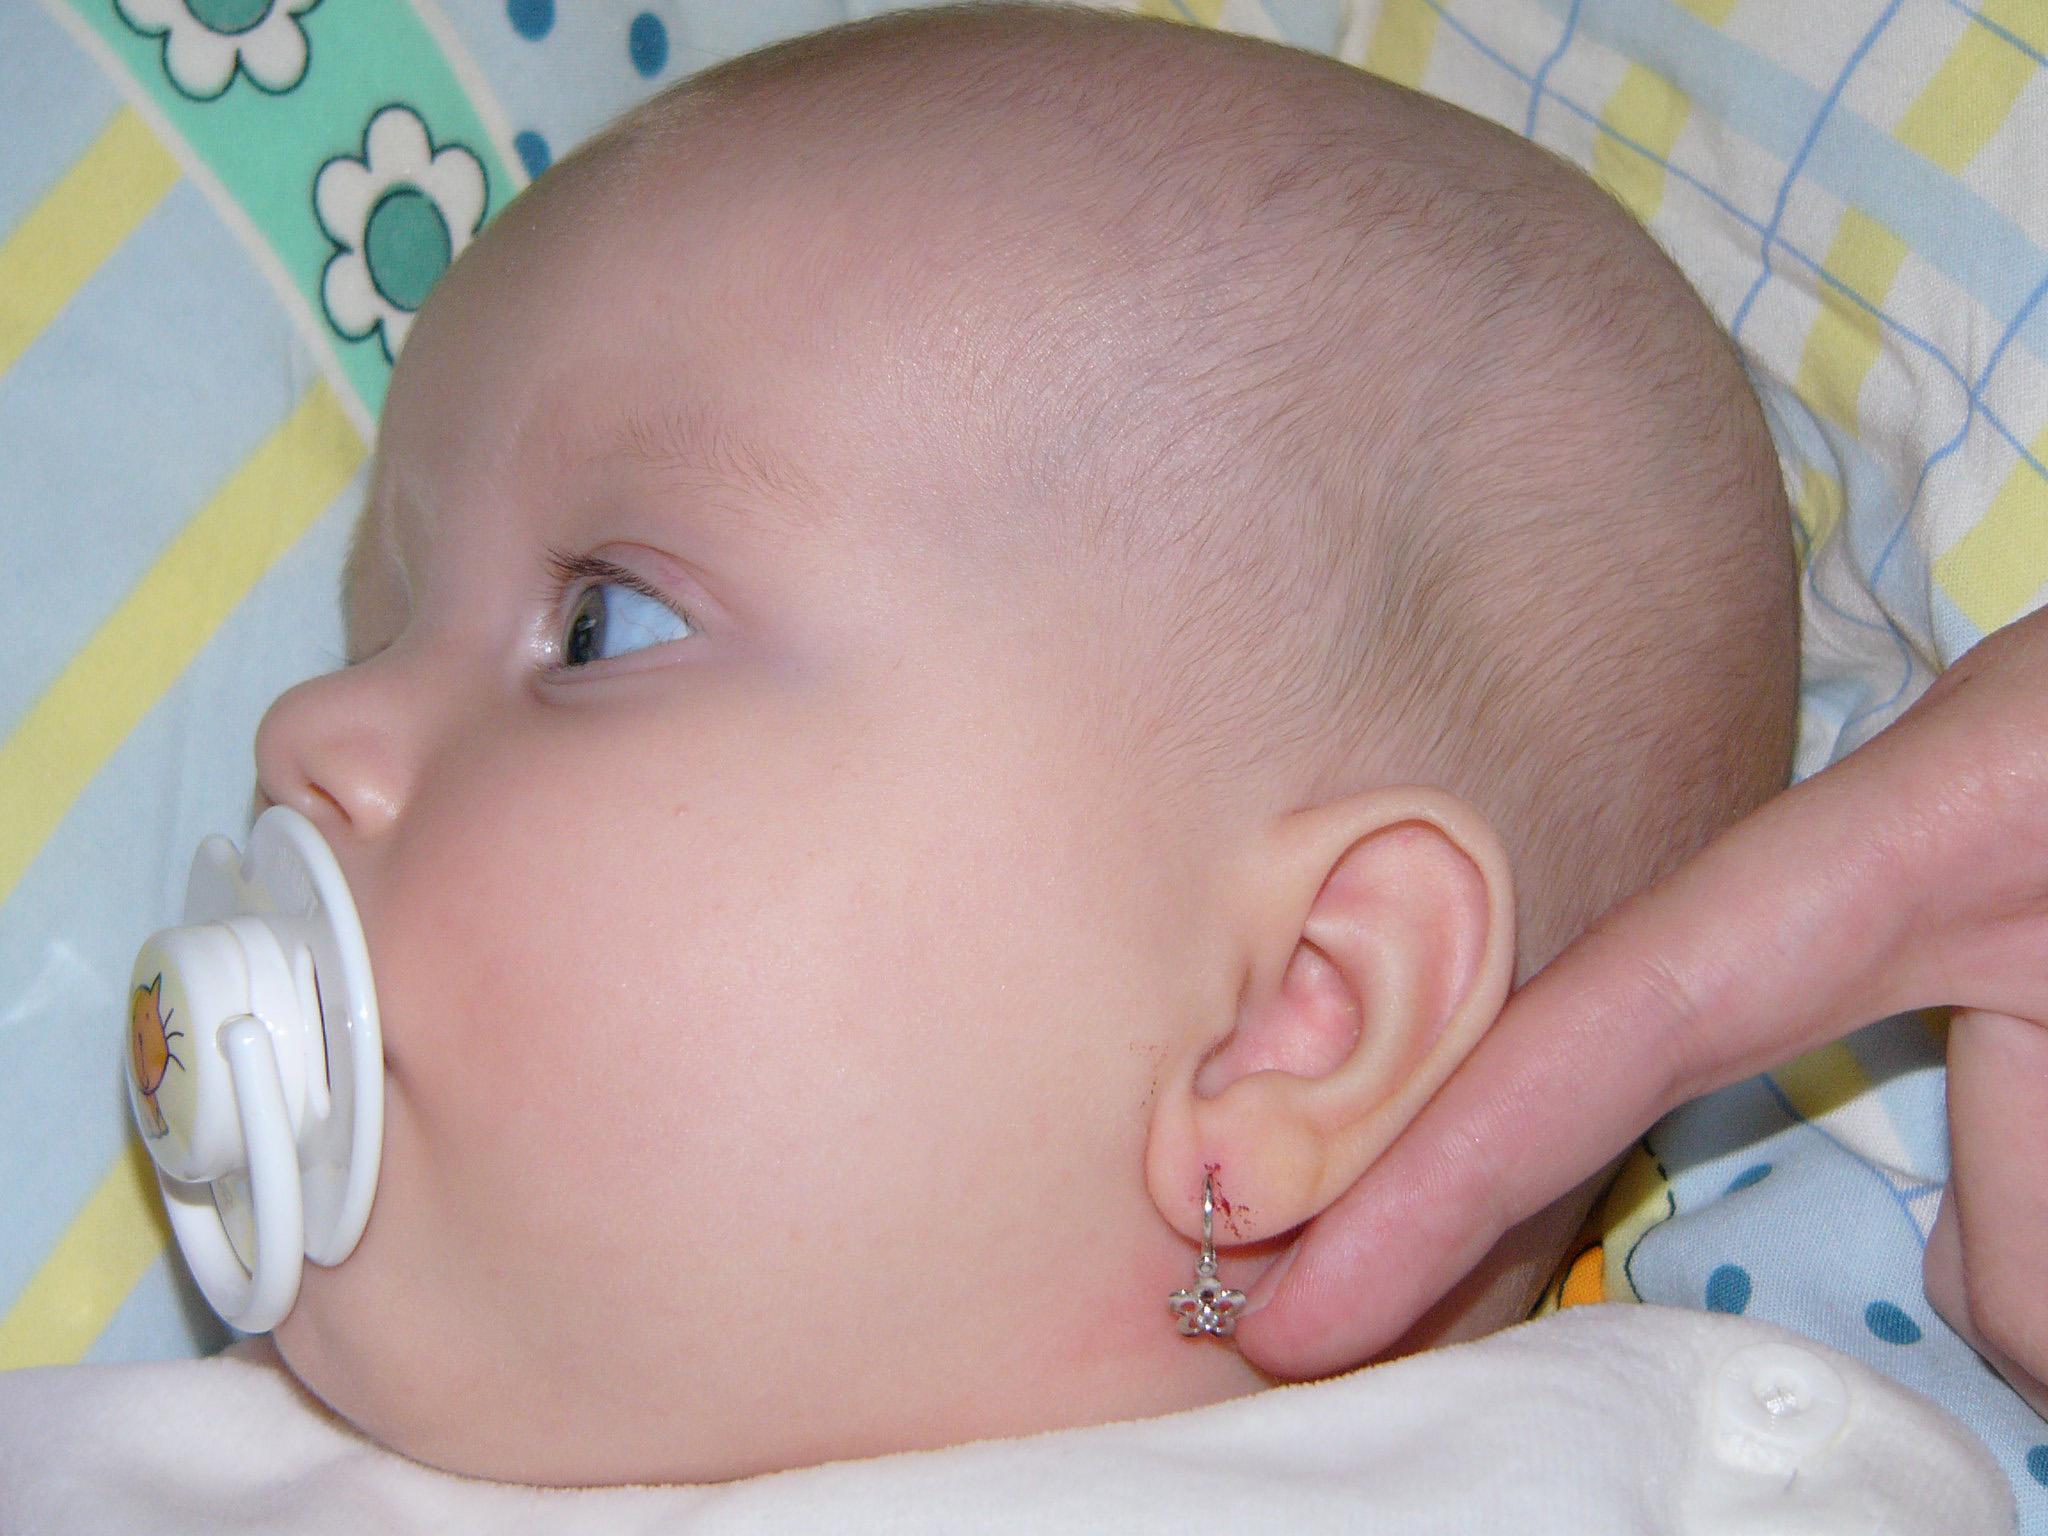 Limpiar los oídos del bebé: cómo debes hacerlo para evitar riesgos